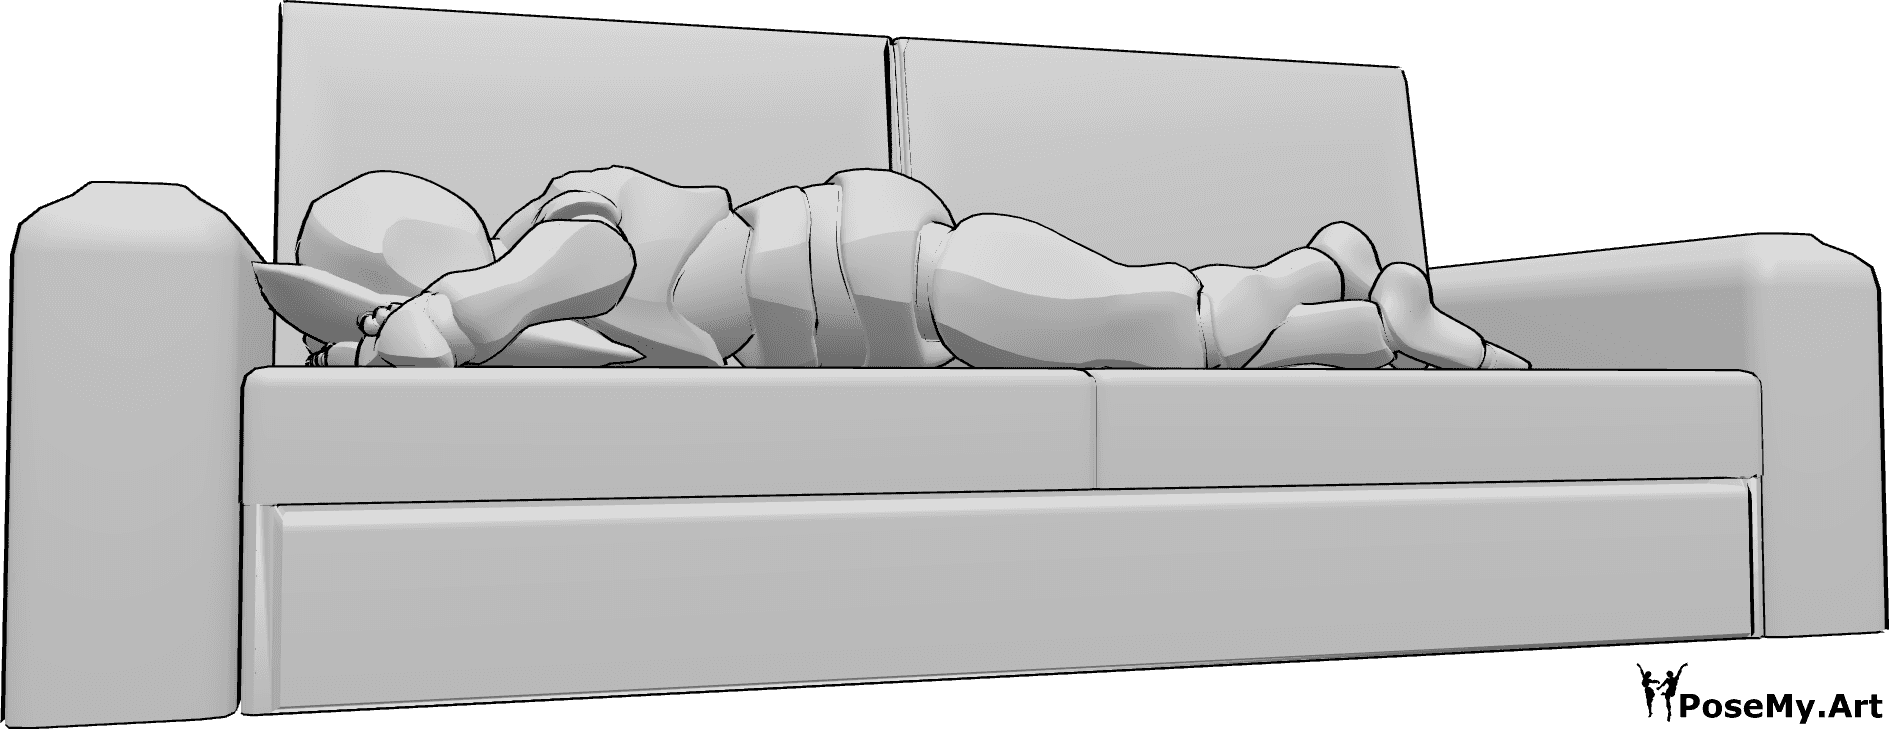 Riferimento alle pose- Posa maschile sdraiata sul divano - L'uomo è sdraiato a pancia in giù sul divano e appoggia la testa su un cuscino.